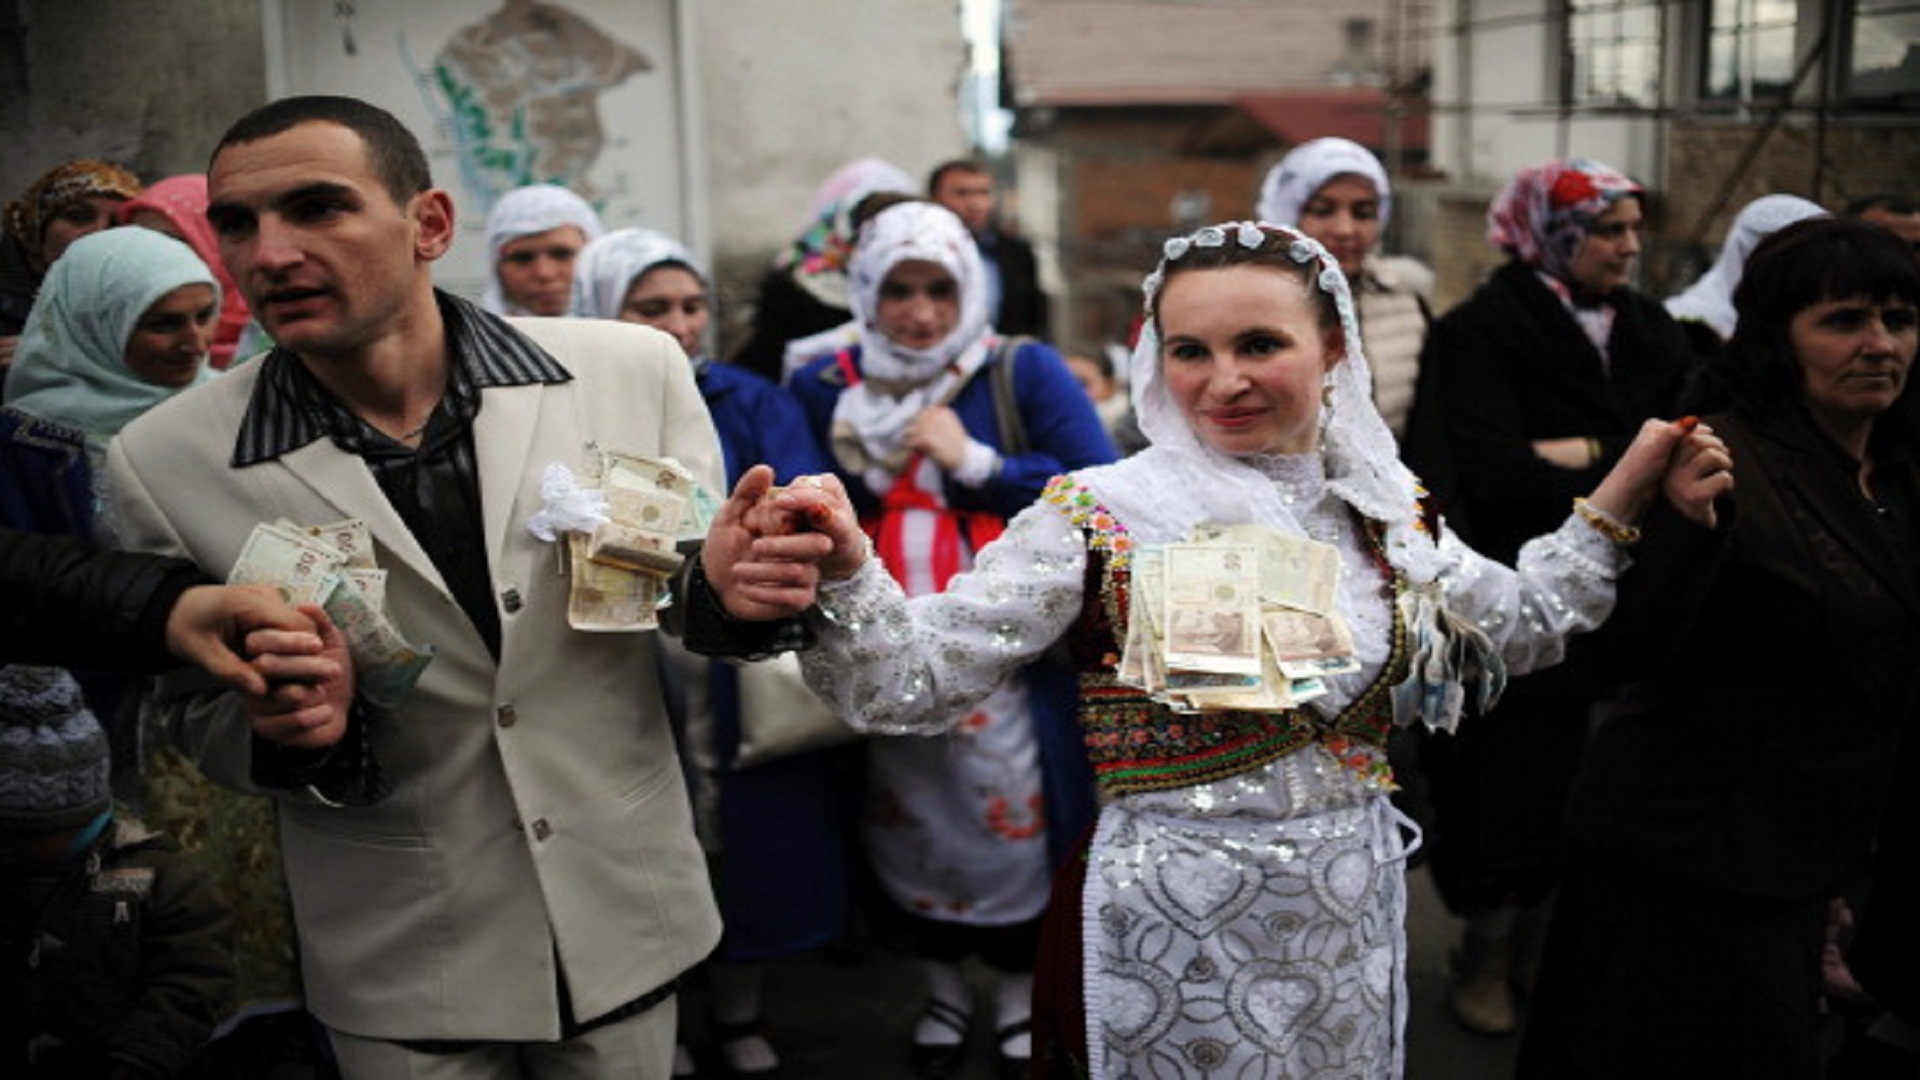 طقوس الزواج الغريبة بقرية مسلمة في بلغاريا1